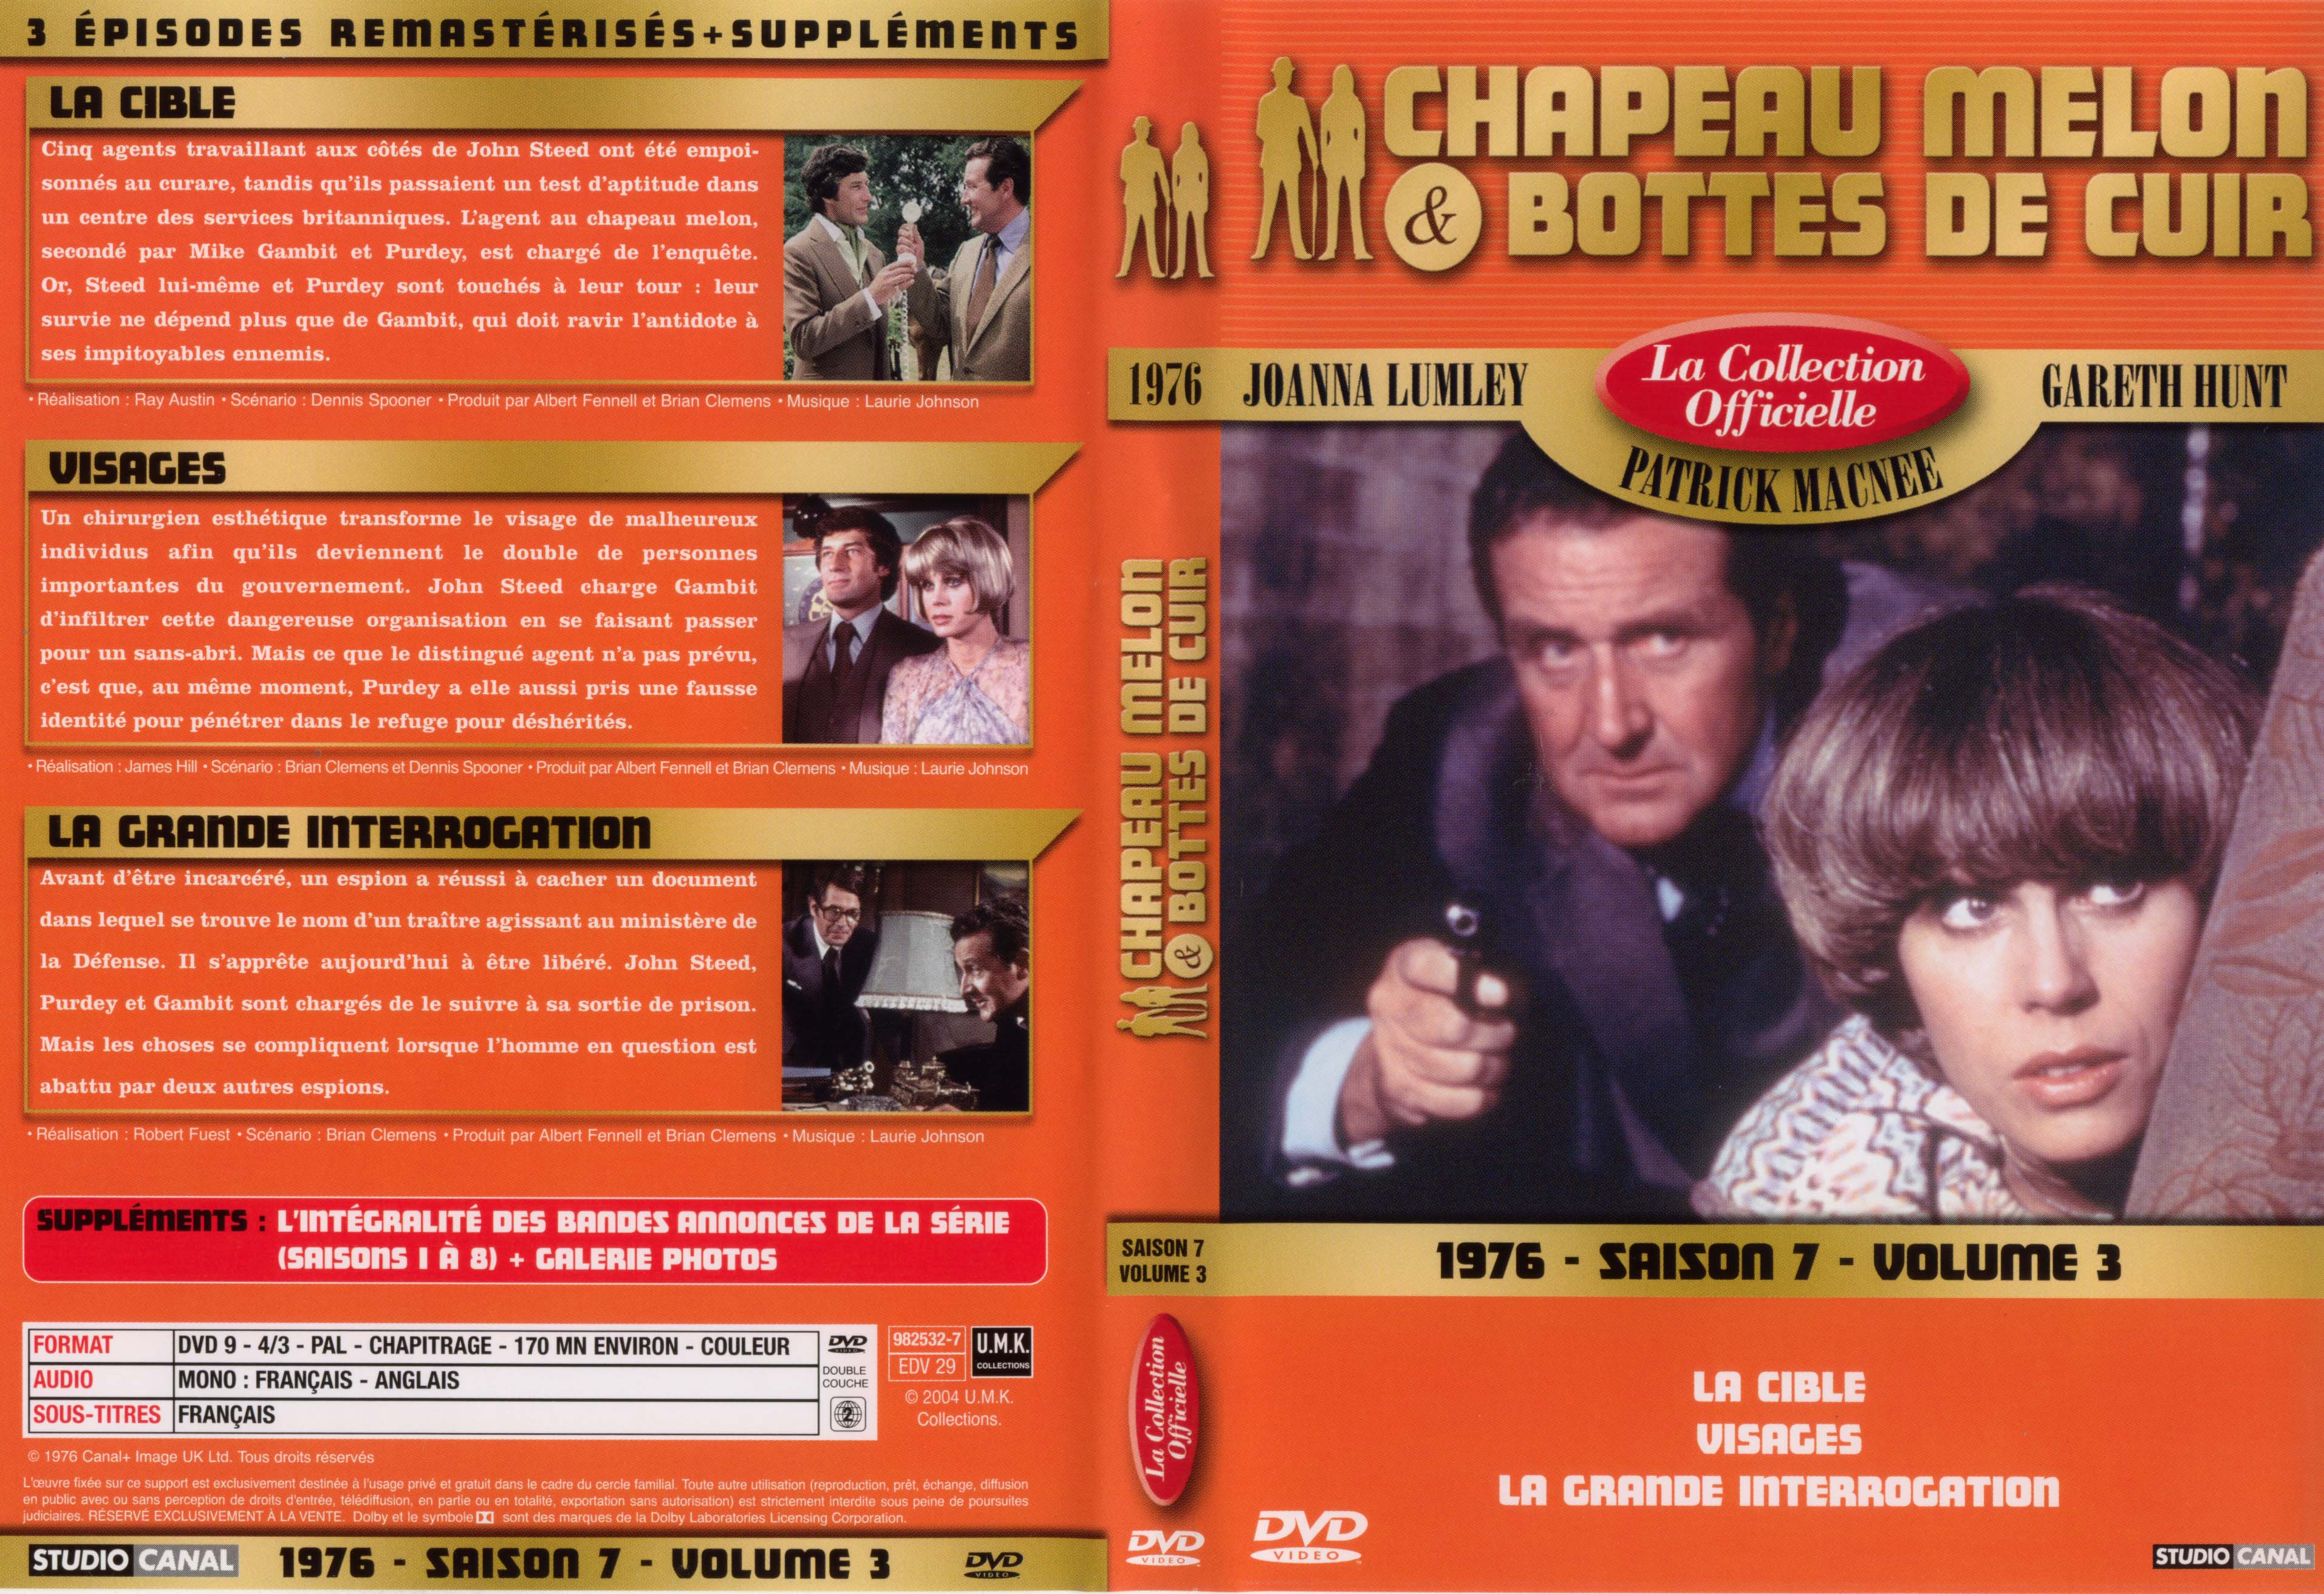 Jaquette DVD Chapeau melon et bottes de cuir 1976 saison 7 vol 3